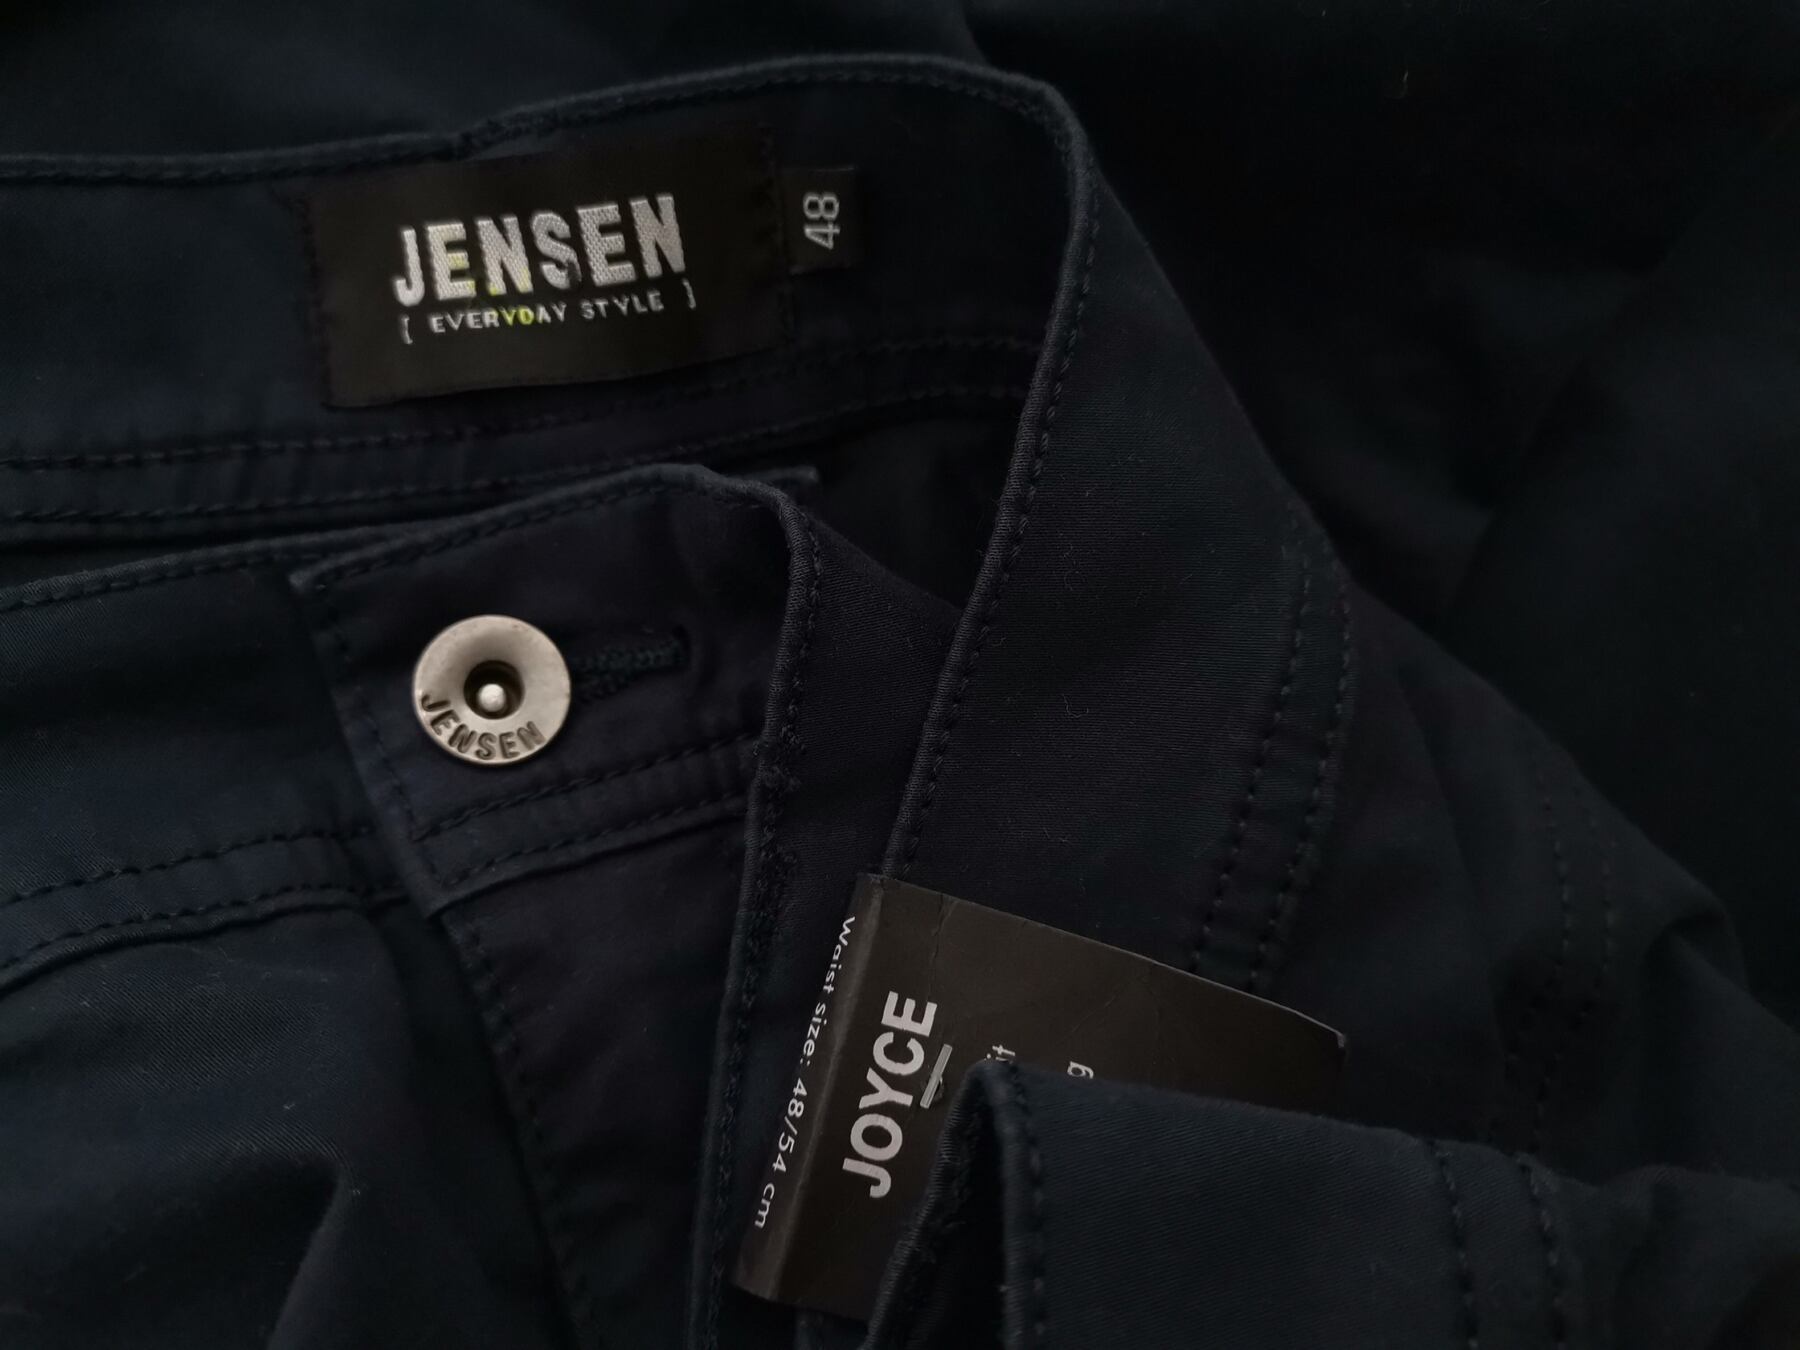 Jensen Rozmiar 48 Kolor Granatowy Spodnie Eleganckie Materiał Bawełna